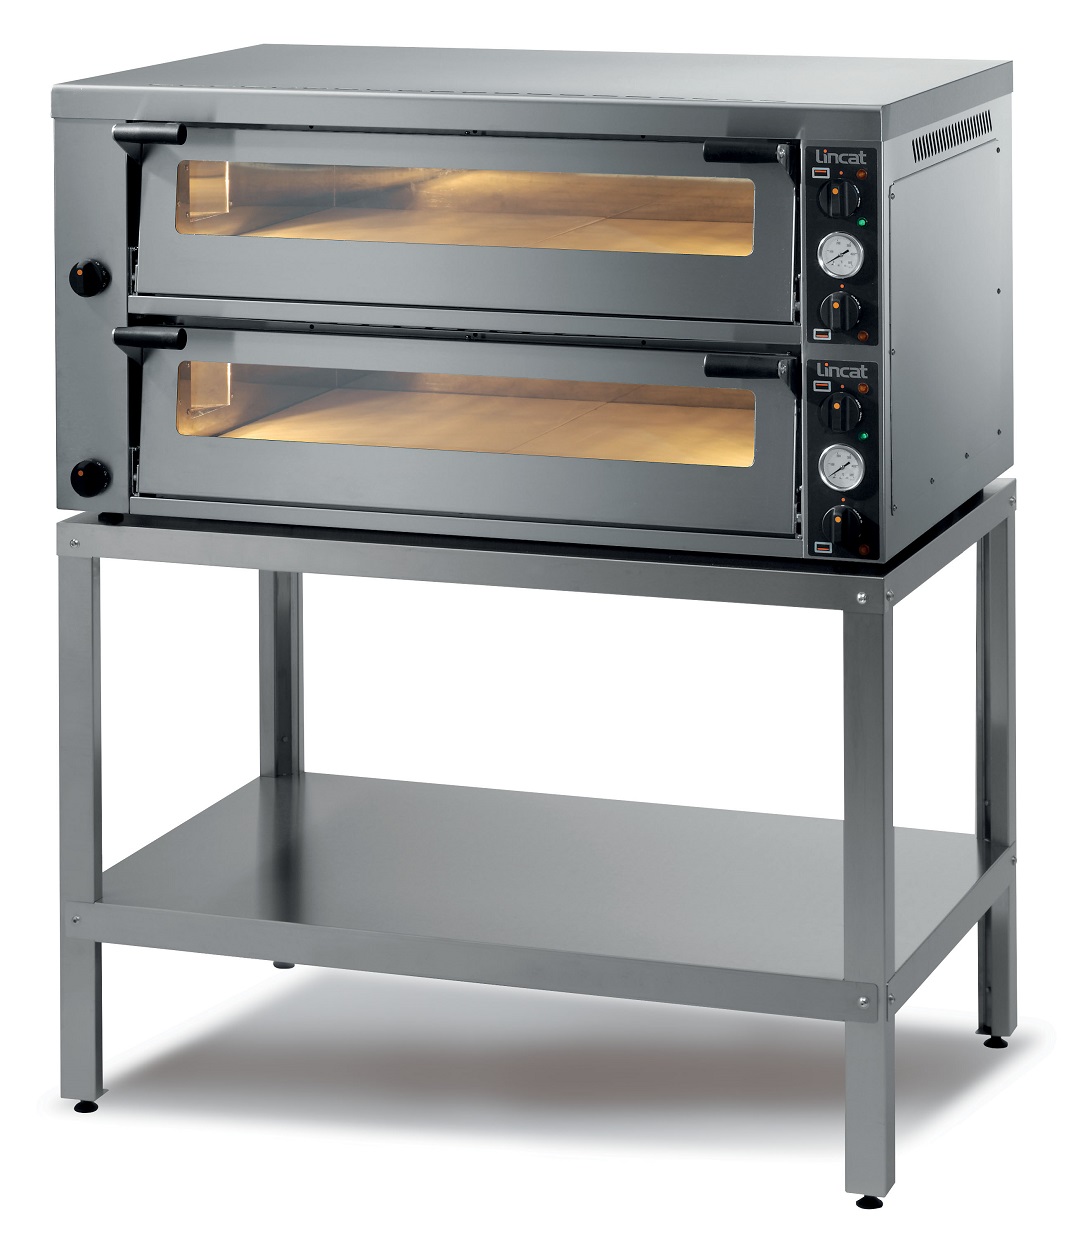 Lincat PO630-2 Premium Twin Deck Pizza Oven